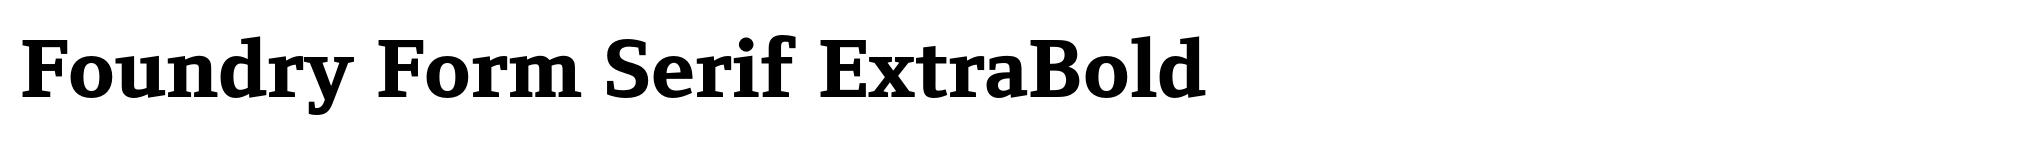 Foundry Form Serif ExtraBold image